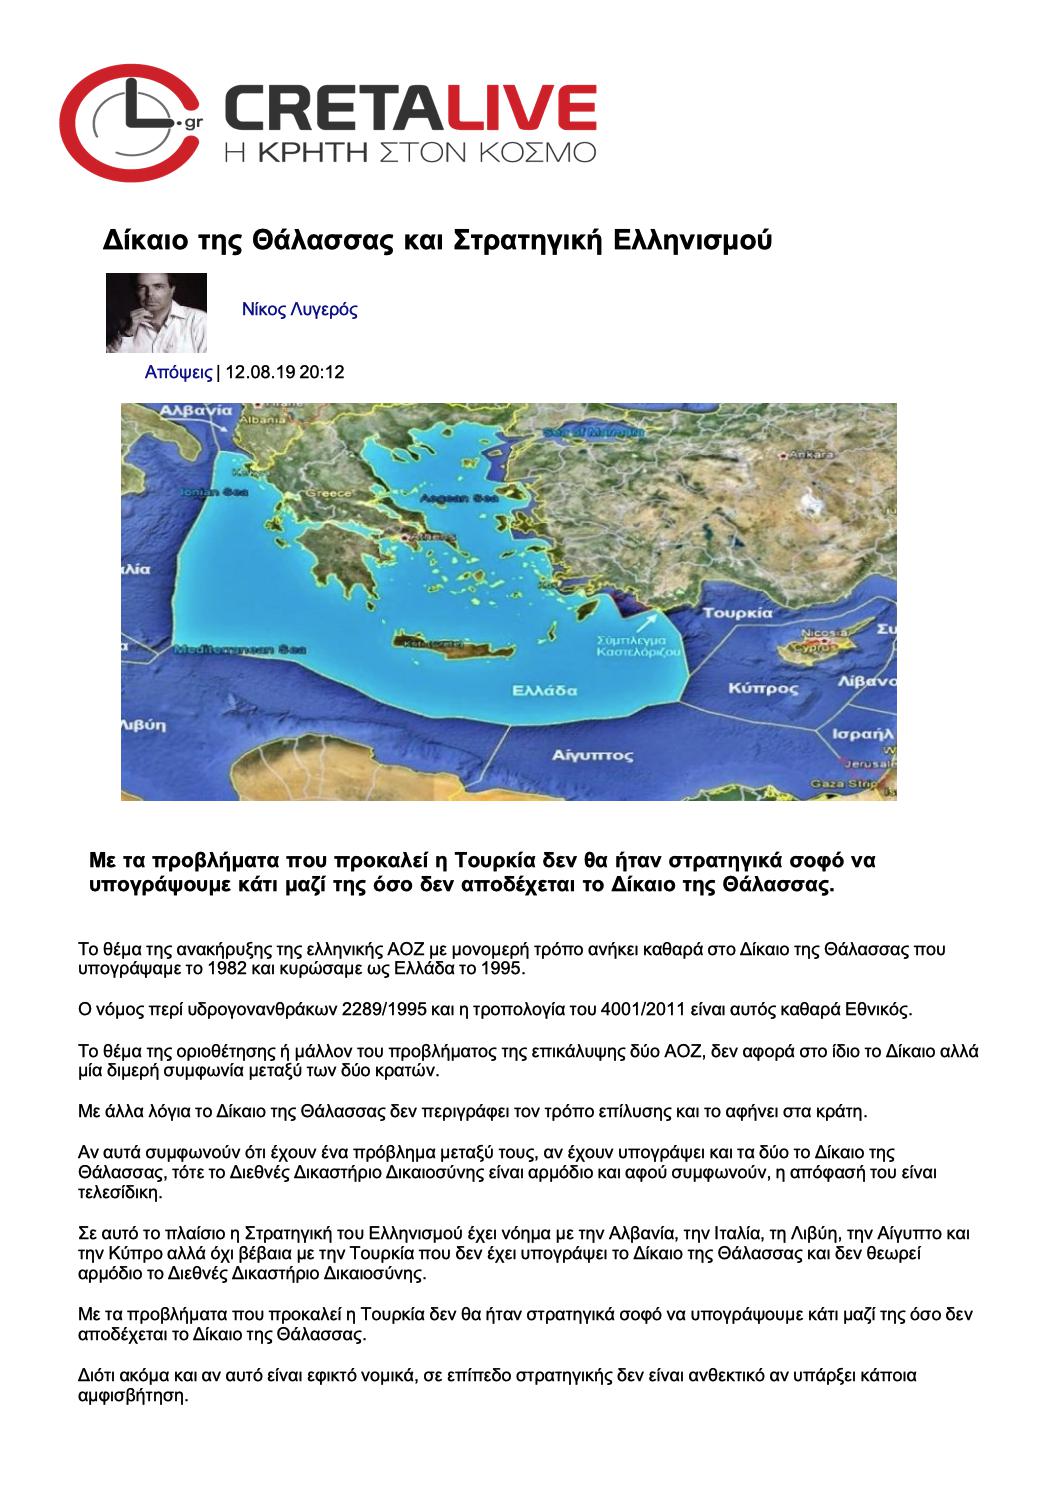 Δίκαιο της θάλασσας και στρατηγική Ελληνισμού, cretalive, 12/08/2019 - Publication